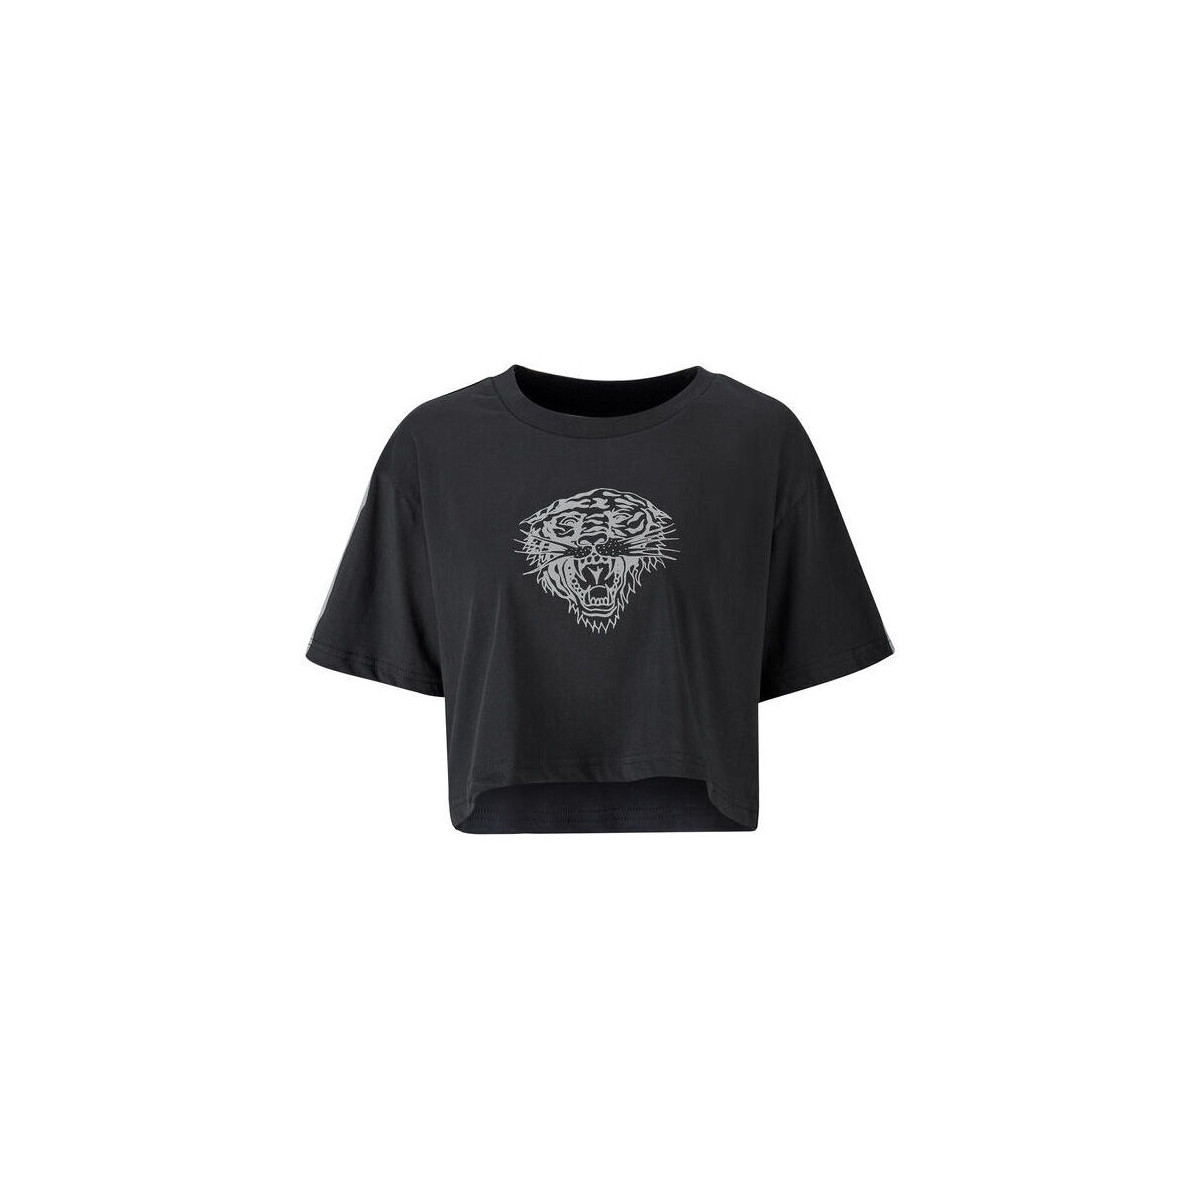 Vêtements Homme T-shirts manches courtes Ed Hardy Tiger glow crop top black Noir